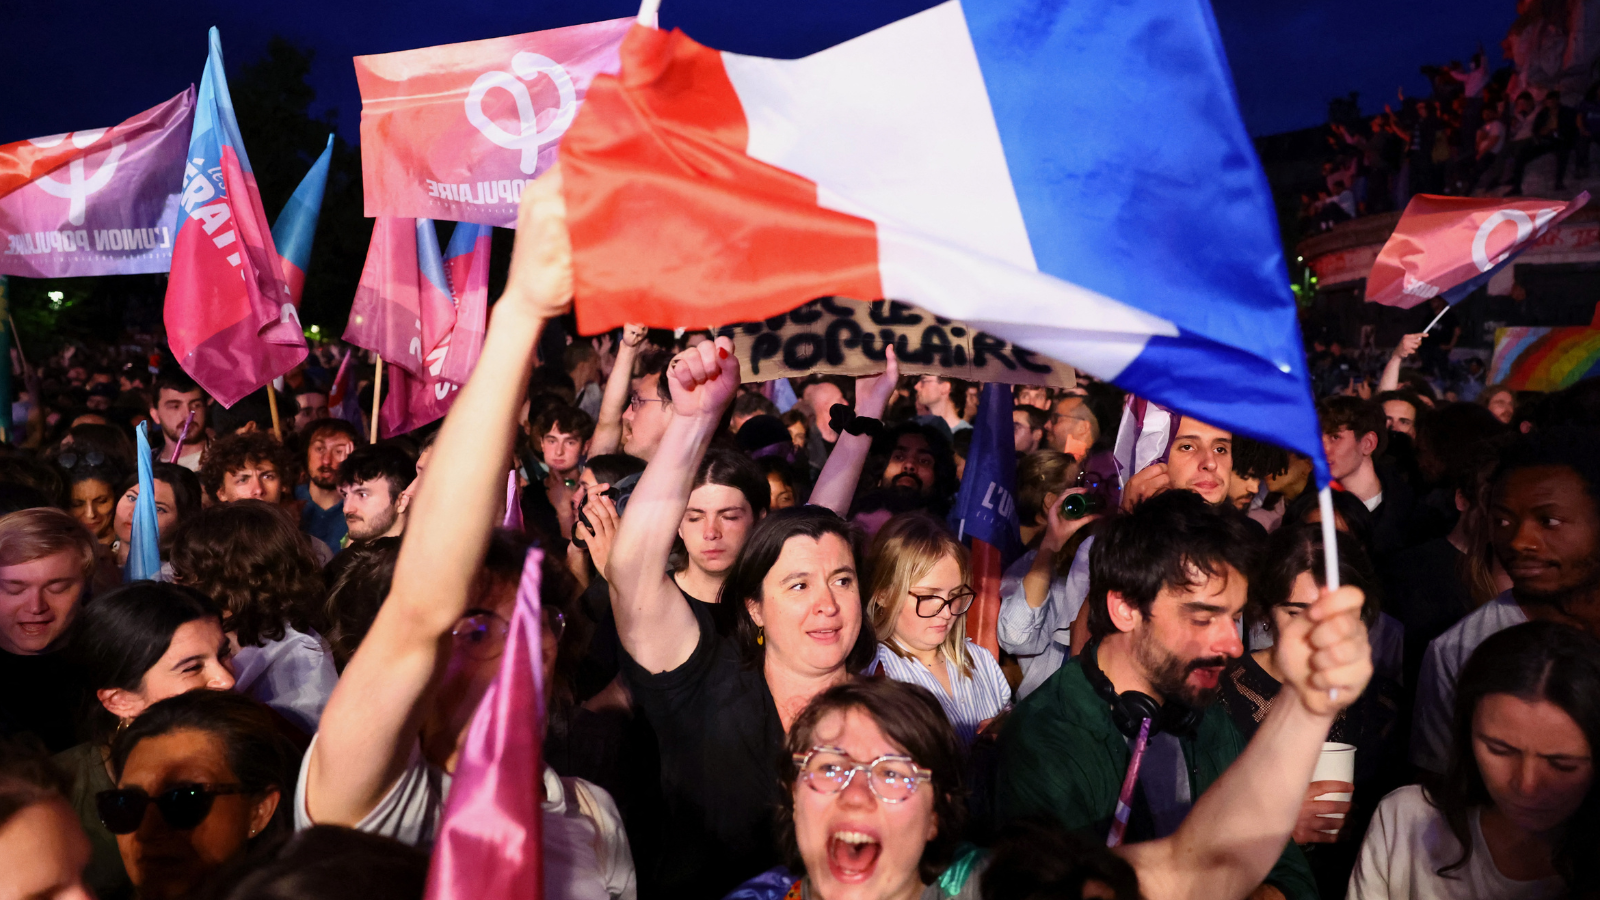 استطلاع: نتائج الجولة الثانية من الانتخابات الفرنسية ستكون "كارثية"